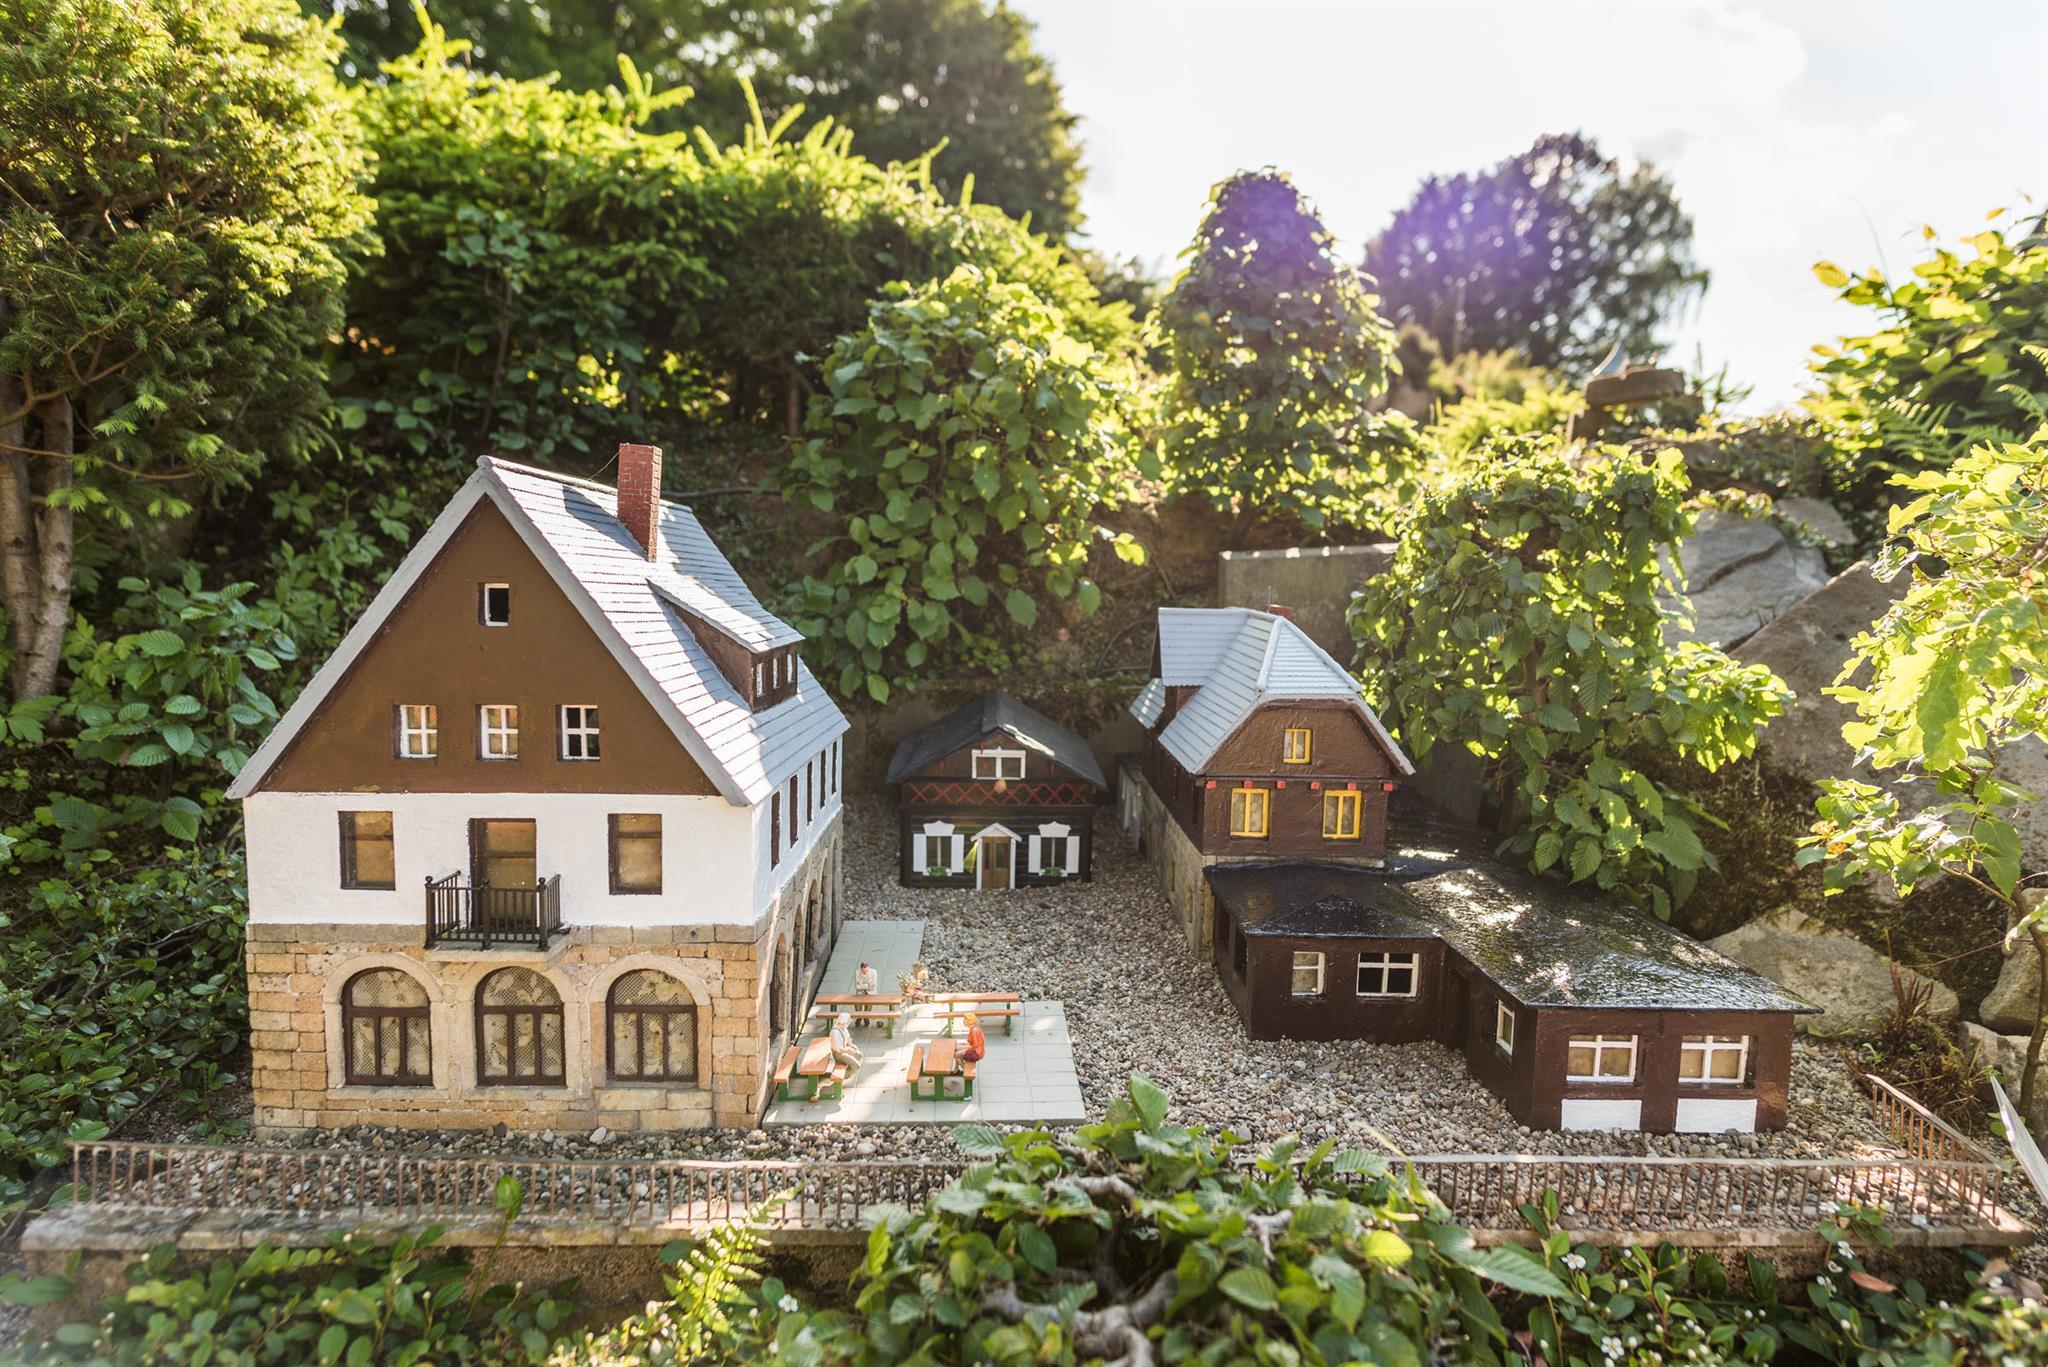 Uhr natürlich - Miniaturpark Kleine Sächsische Schweiz